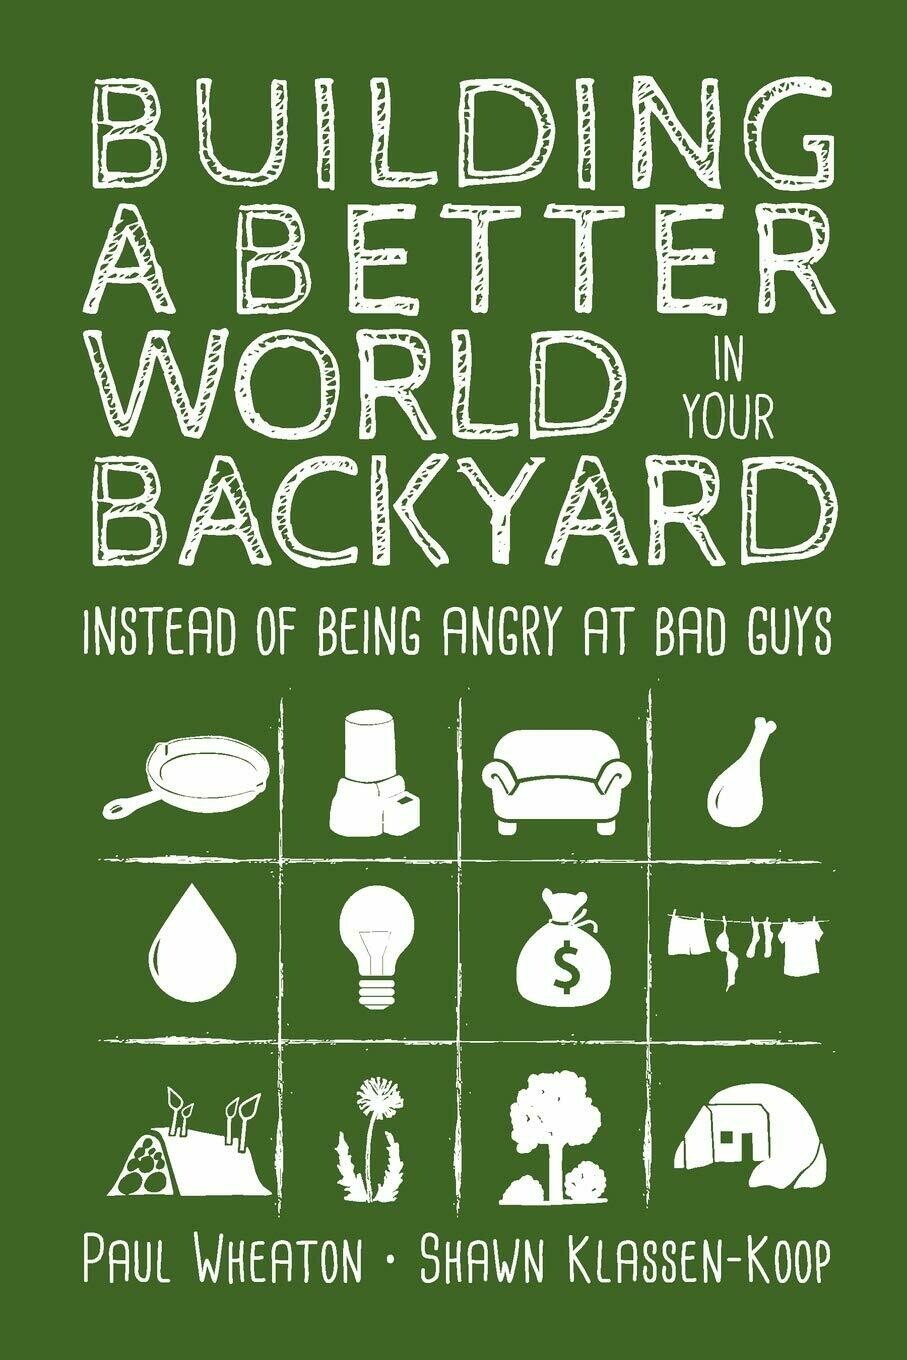 Building a Better World in Your Backyard by Paul Wheaton and Shawn Klassen-Koop